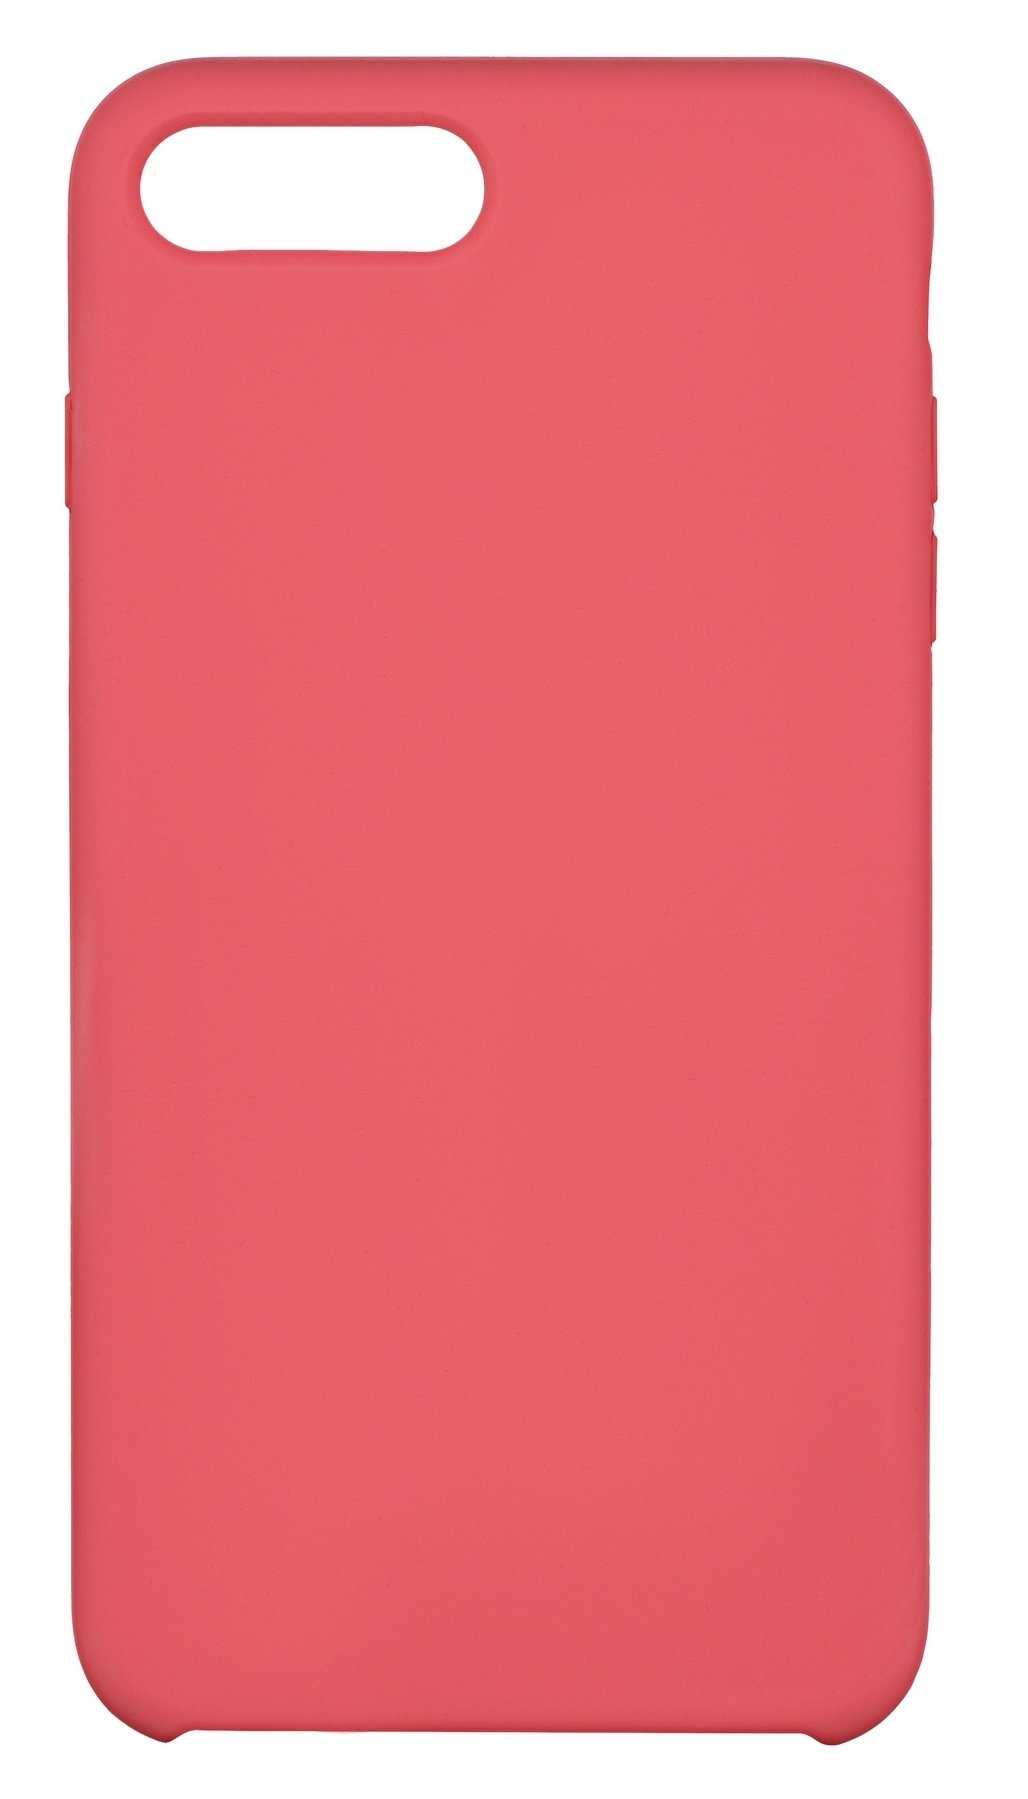 Акция на 2Е для Apple iPhone 7/8 Plus Liquid Silicone Rose Red (2E-IPH-7/8P-NKSLS-RRD) от Repka